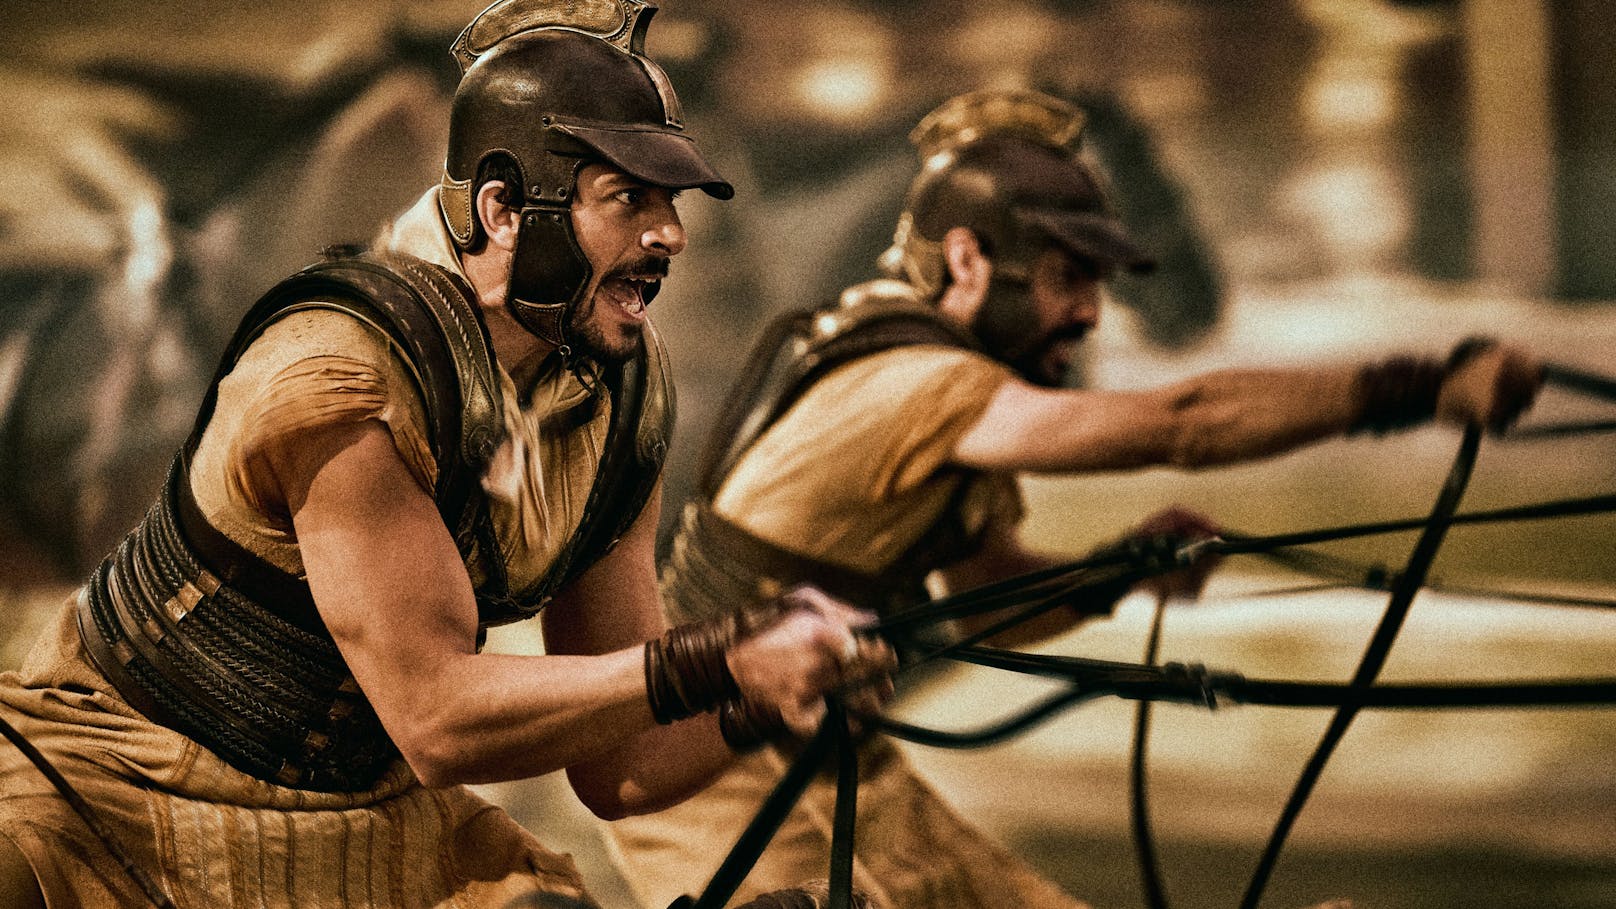 Hype um "Gladiator": Jetzt kommt sogar eine Serie